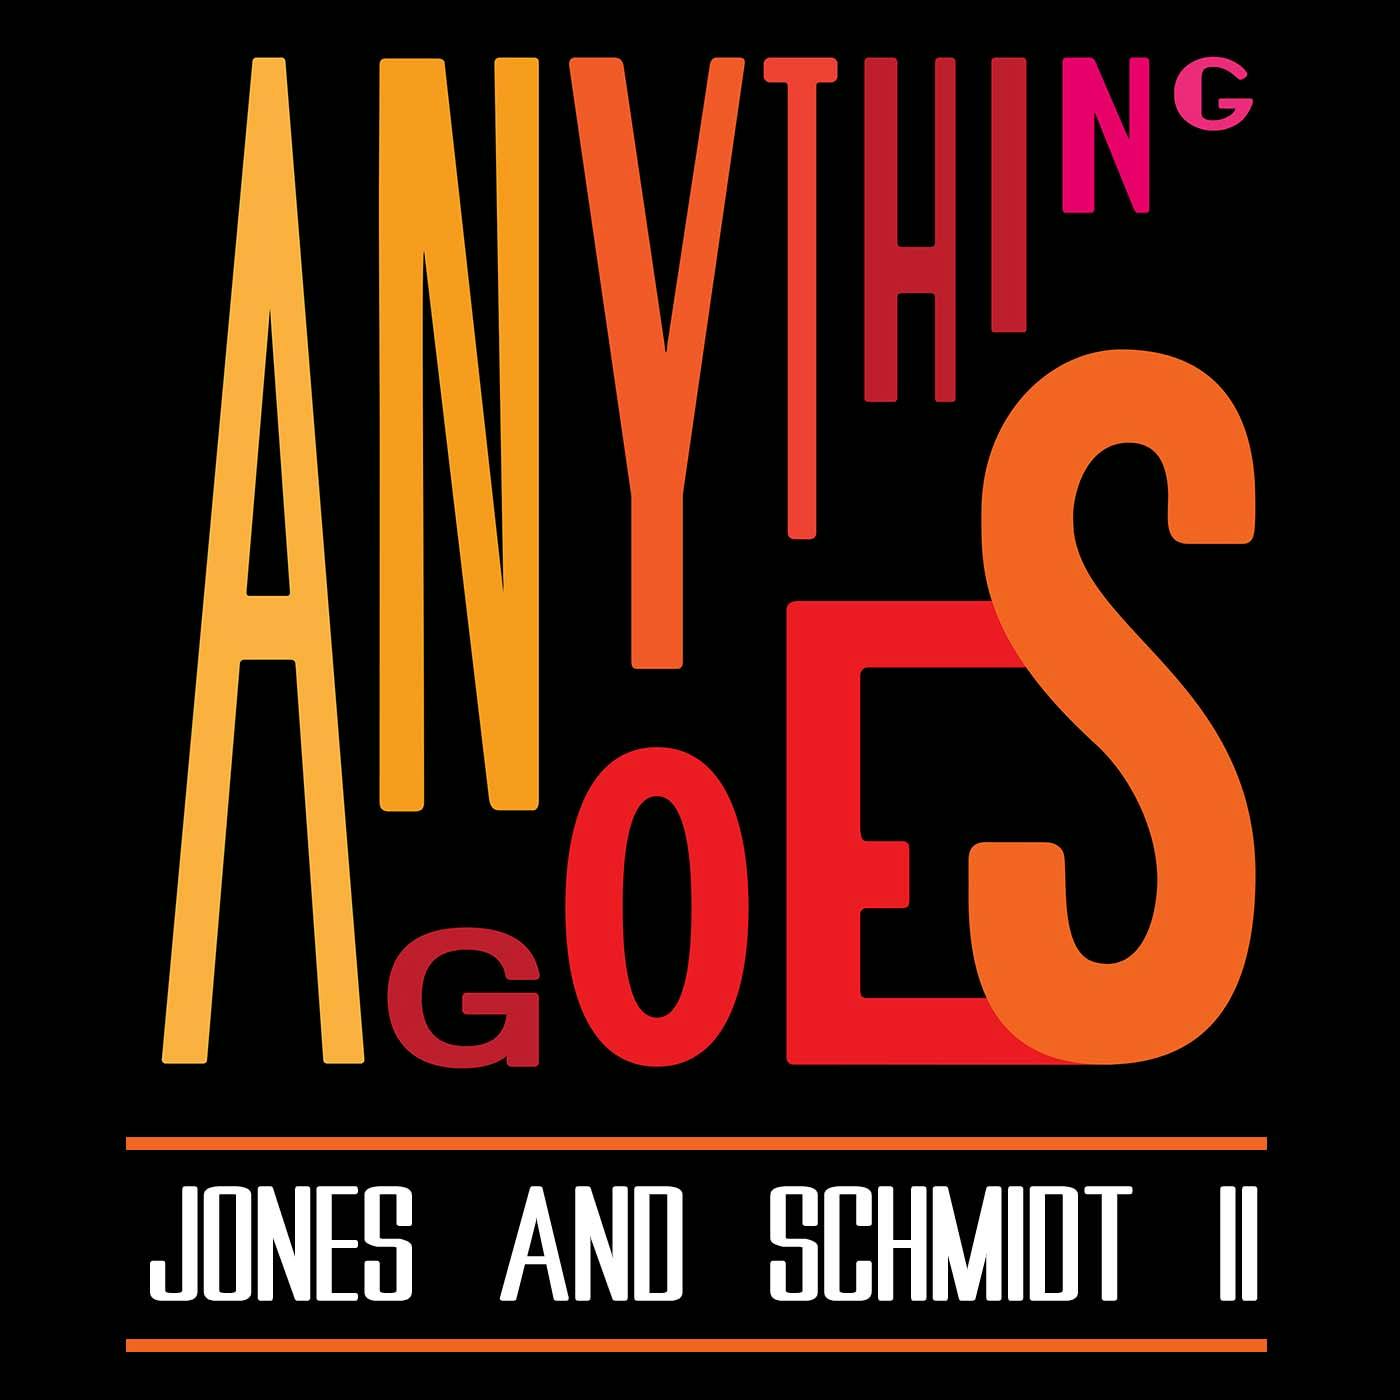 53 Jones and Schmidt II